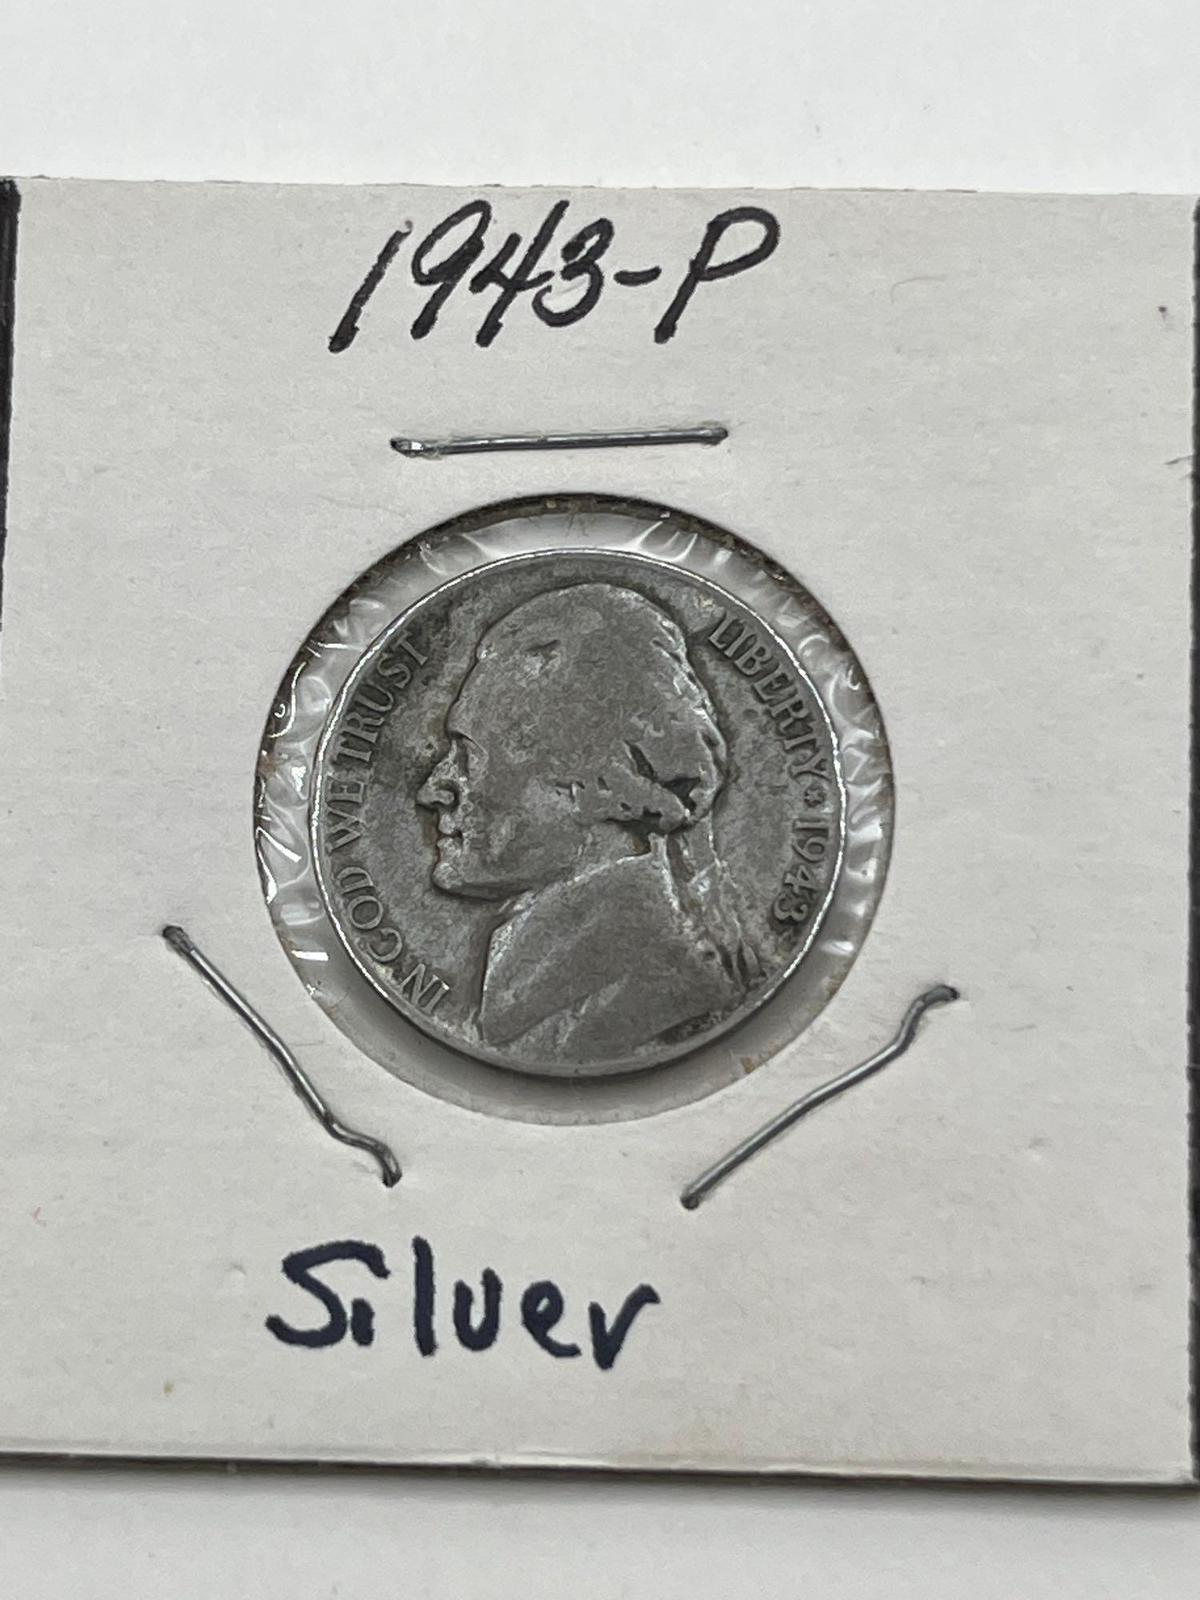 Nickel, 1943-P, "Silver"